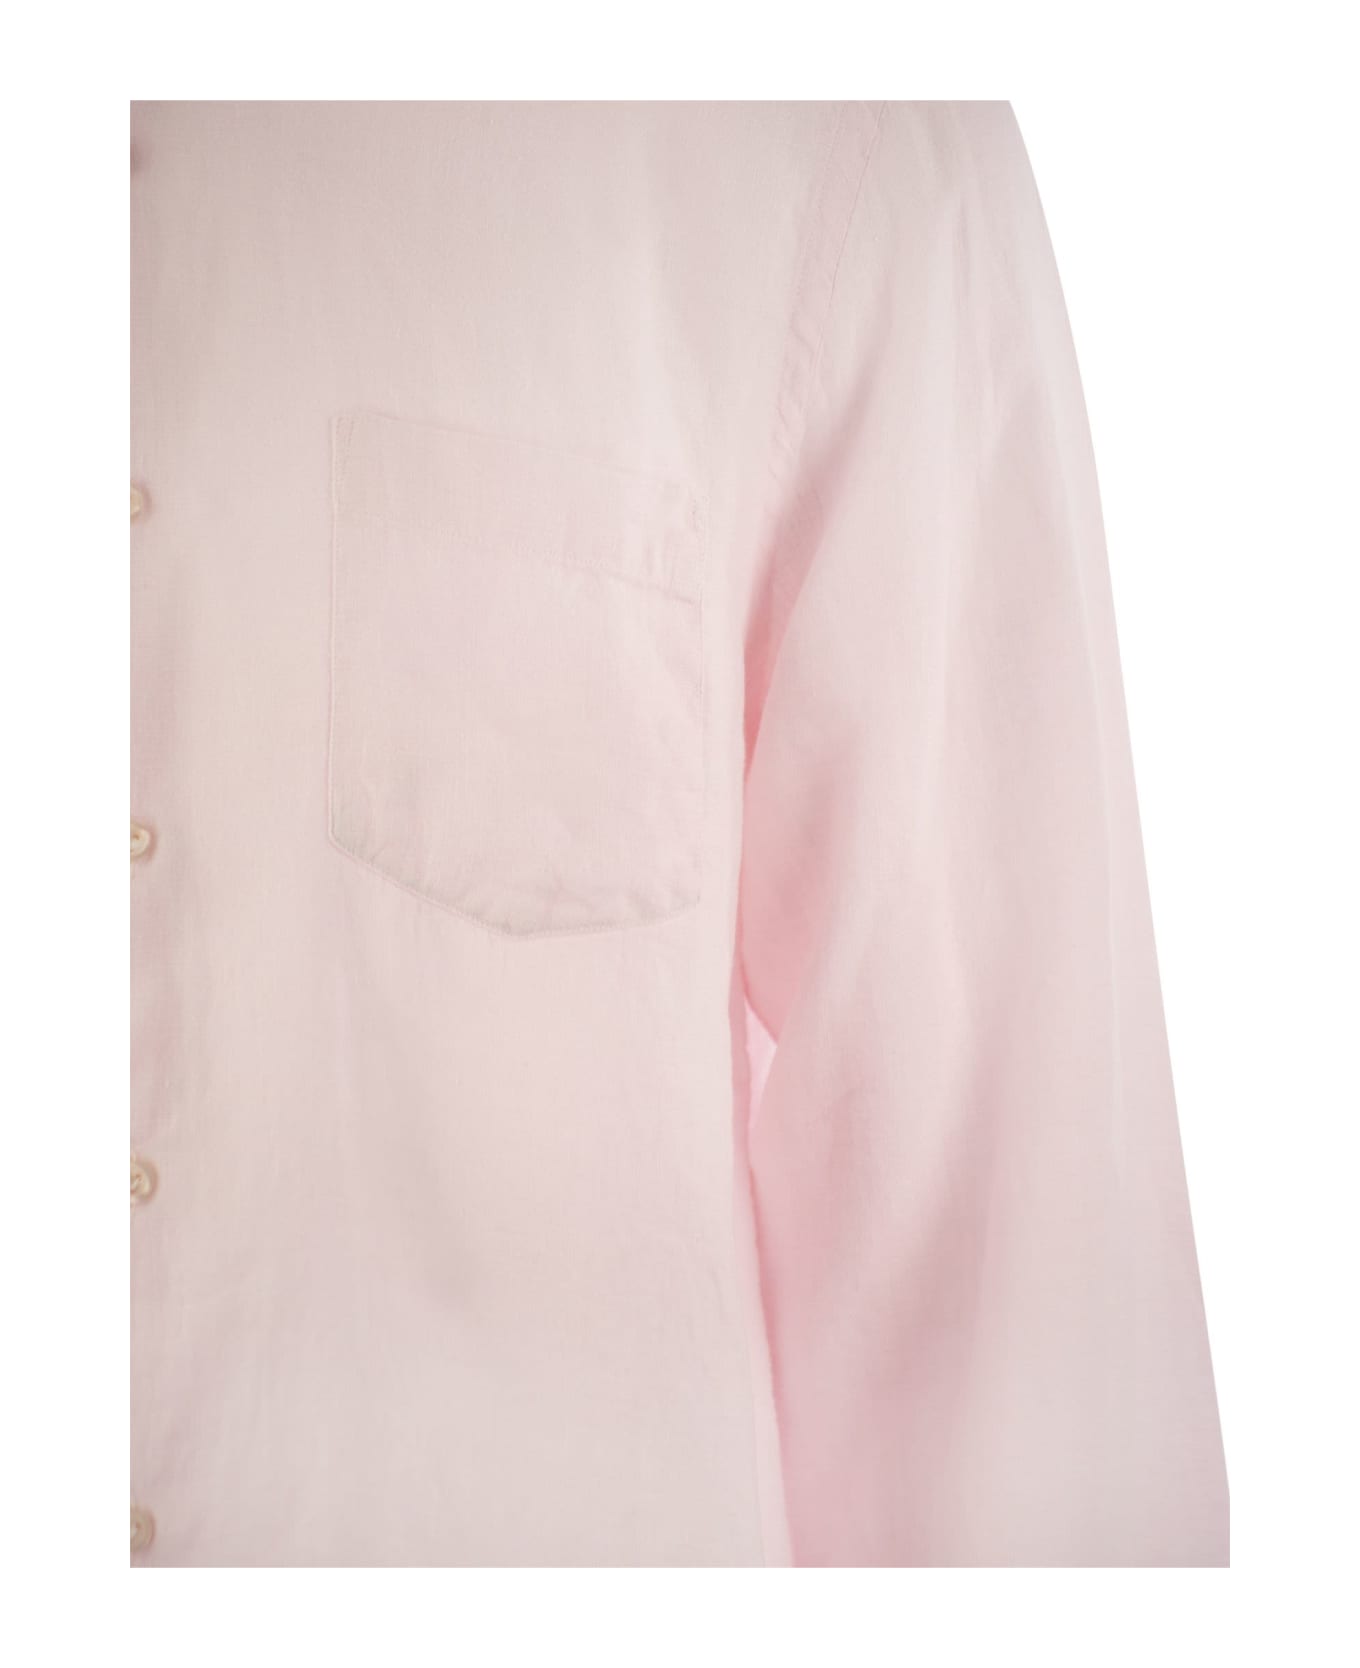 Vilebrequin Long-sleeved Linen Shirt - Pink